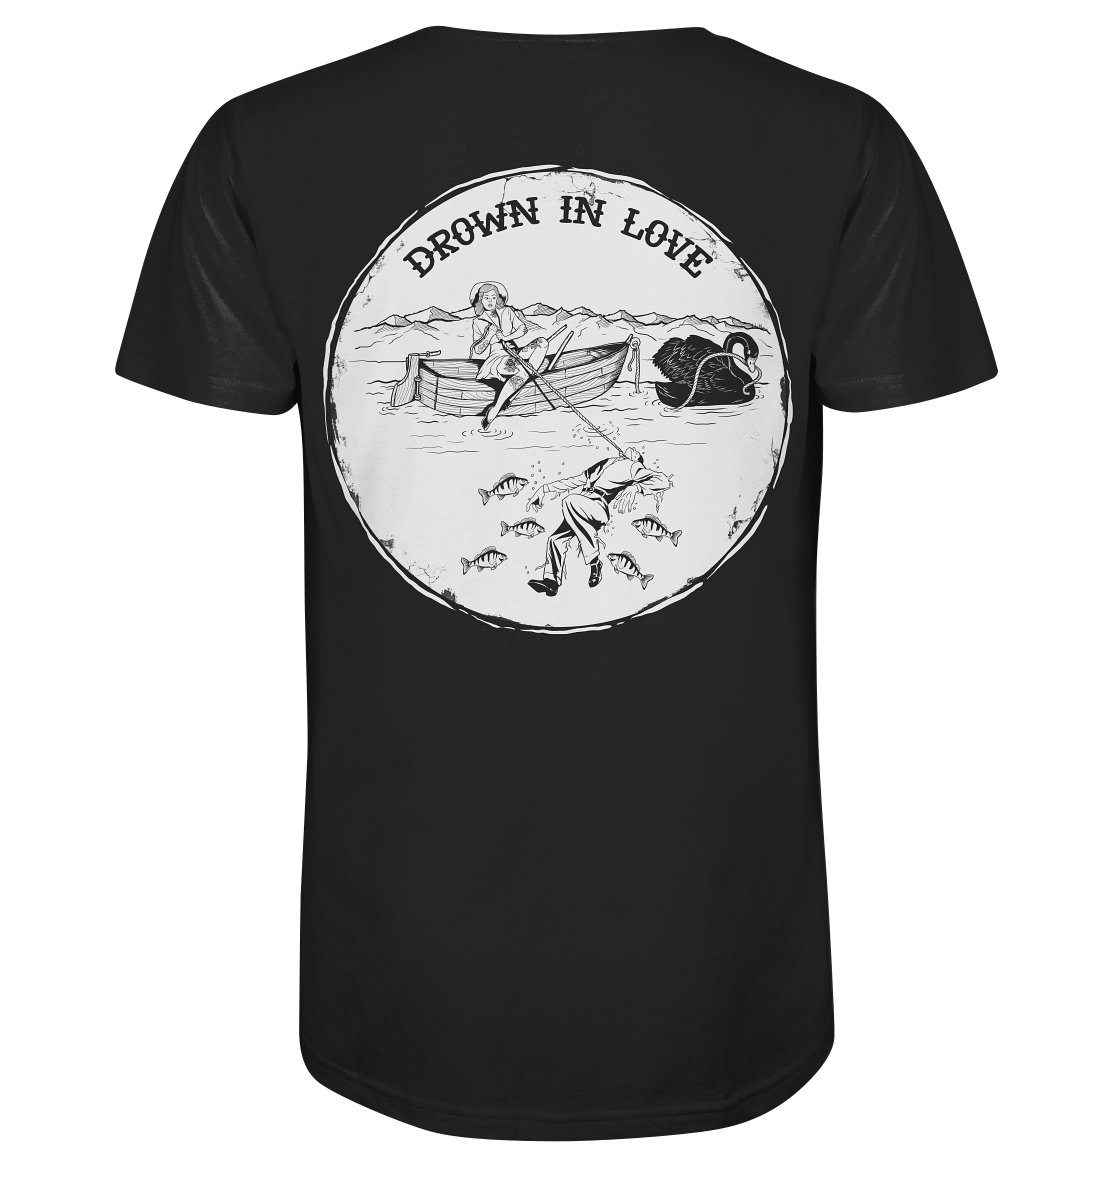 back-organic-shirt-272727-1116x.png